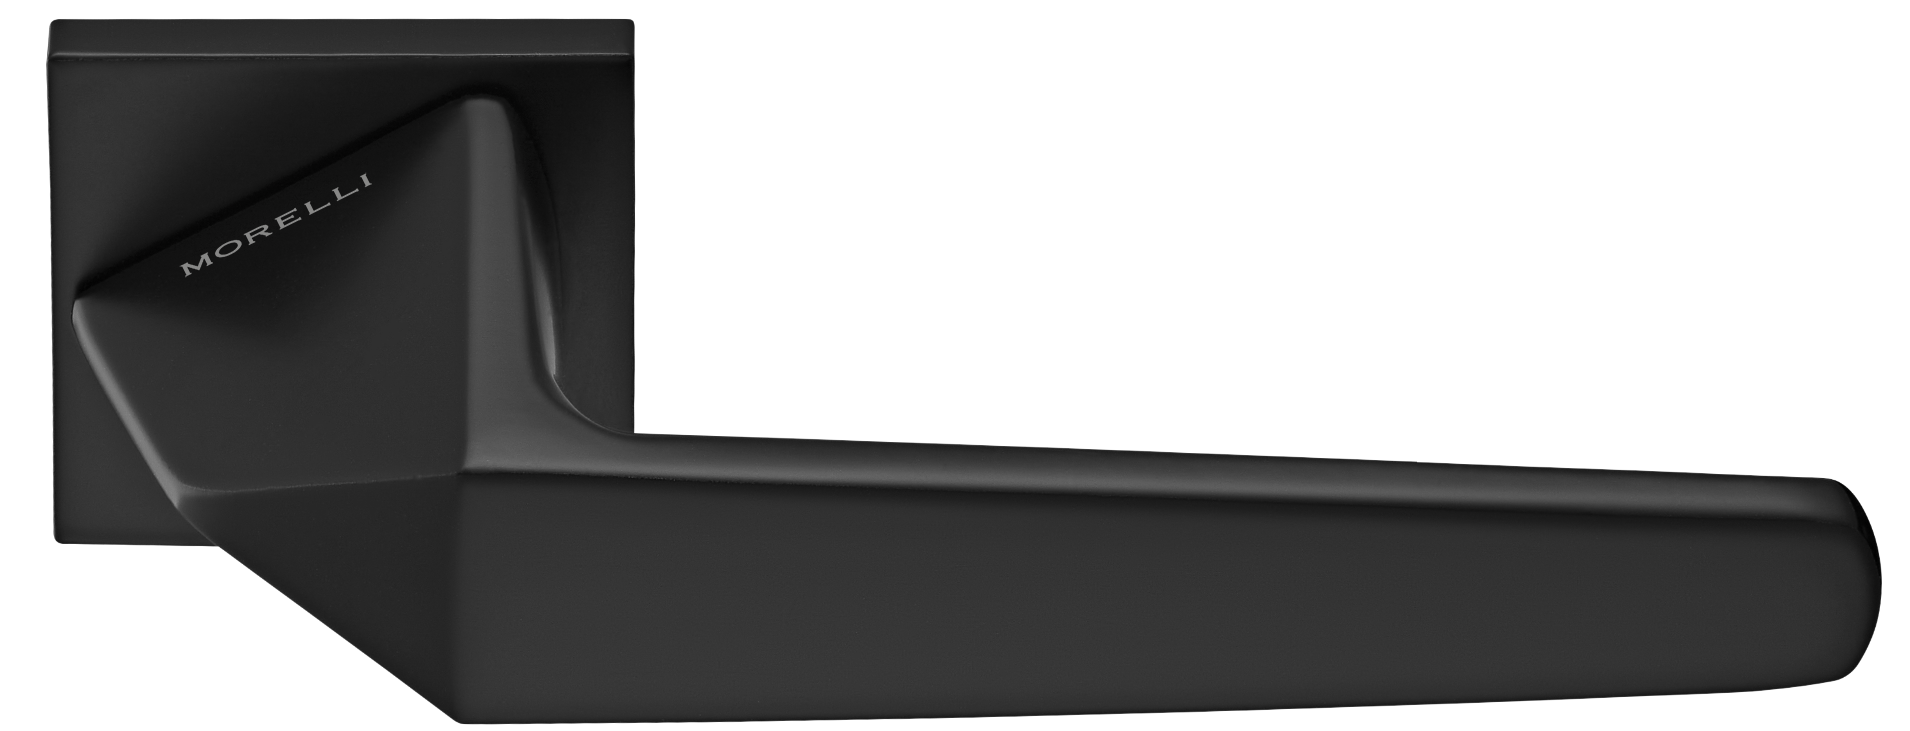 SOUK ручка дверная на квадратной розетке 6 мм, MH-55-S6 BL, цвет - черный фото купить Набережные Челны